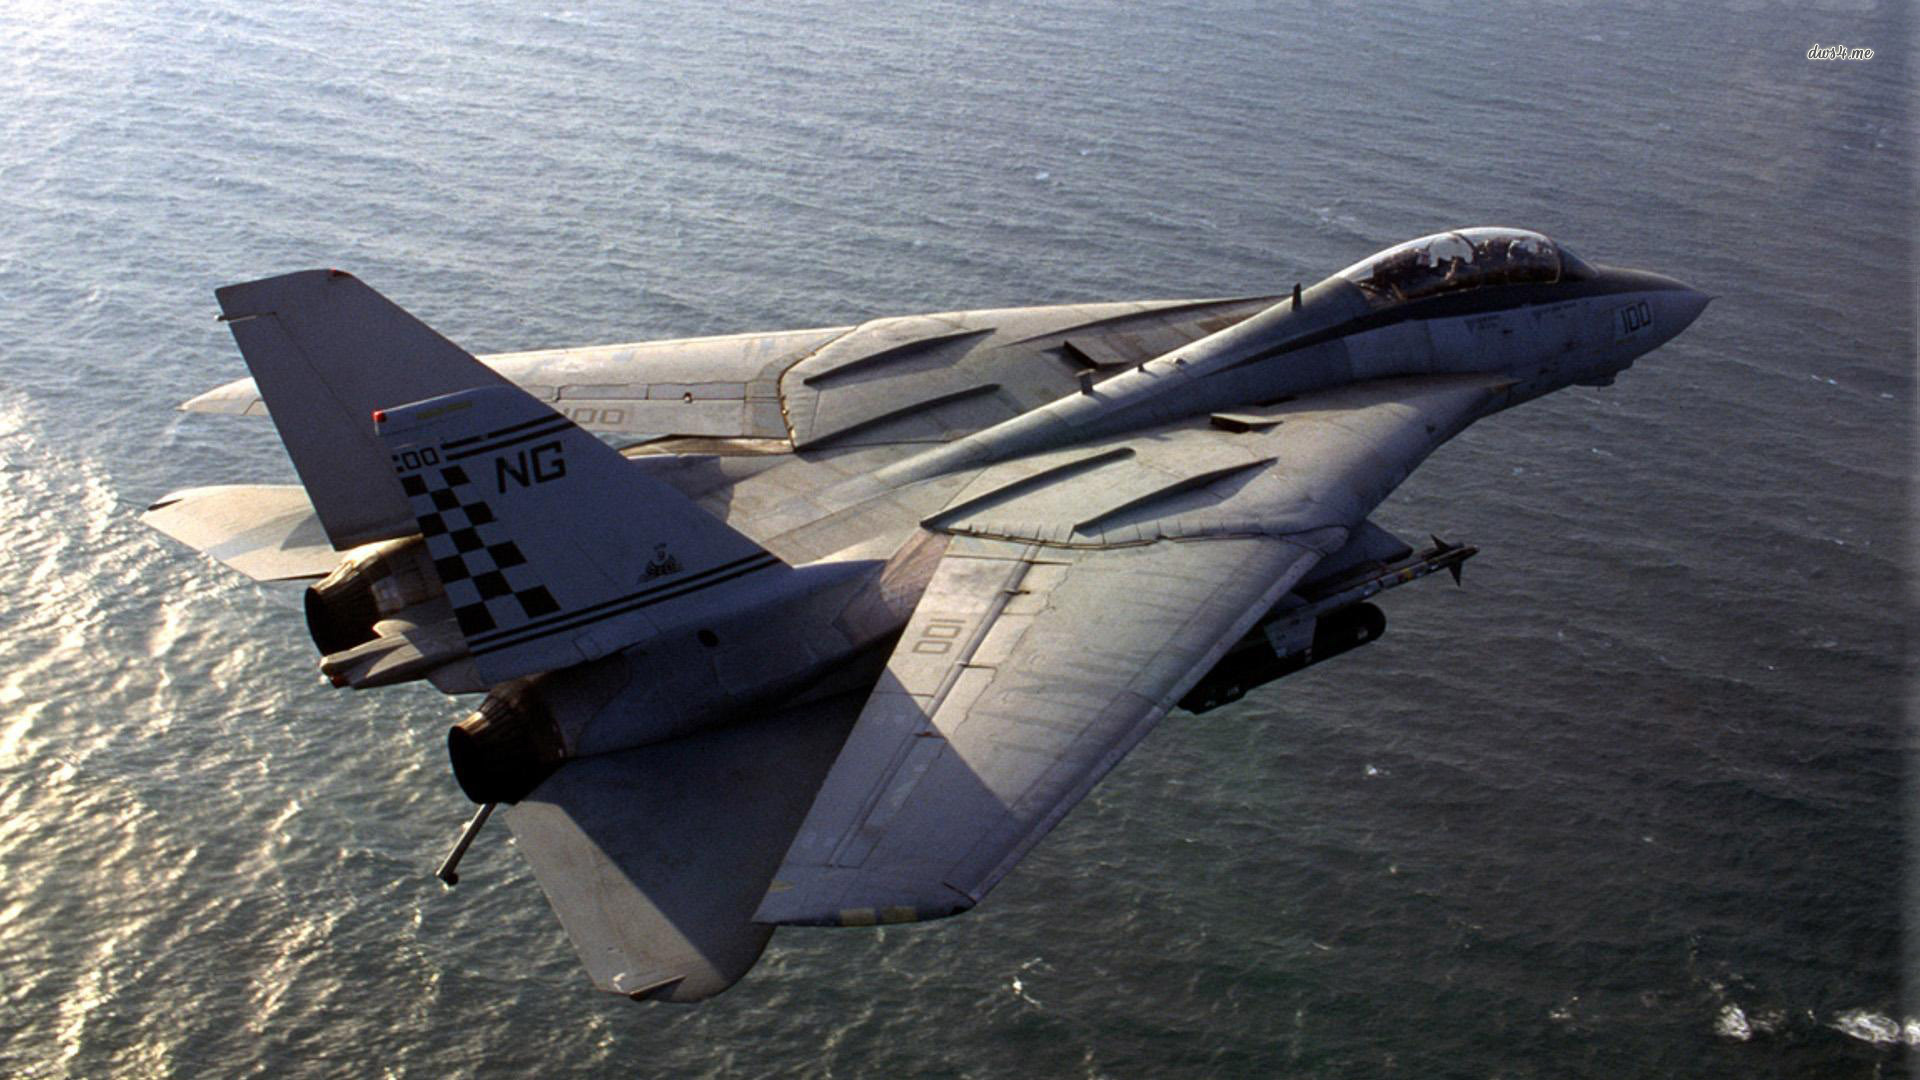 Скачать обои бесплатно Военные, Грумман F 14 Томкэт, Реактивные Истребители картинка на рабочий стол ПК